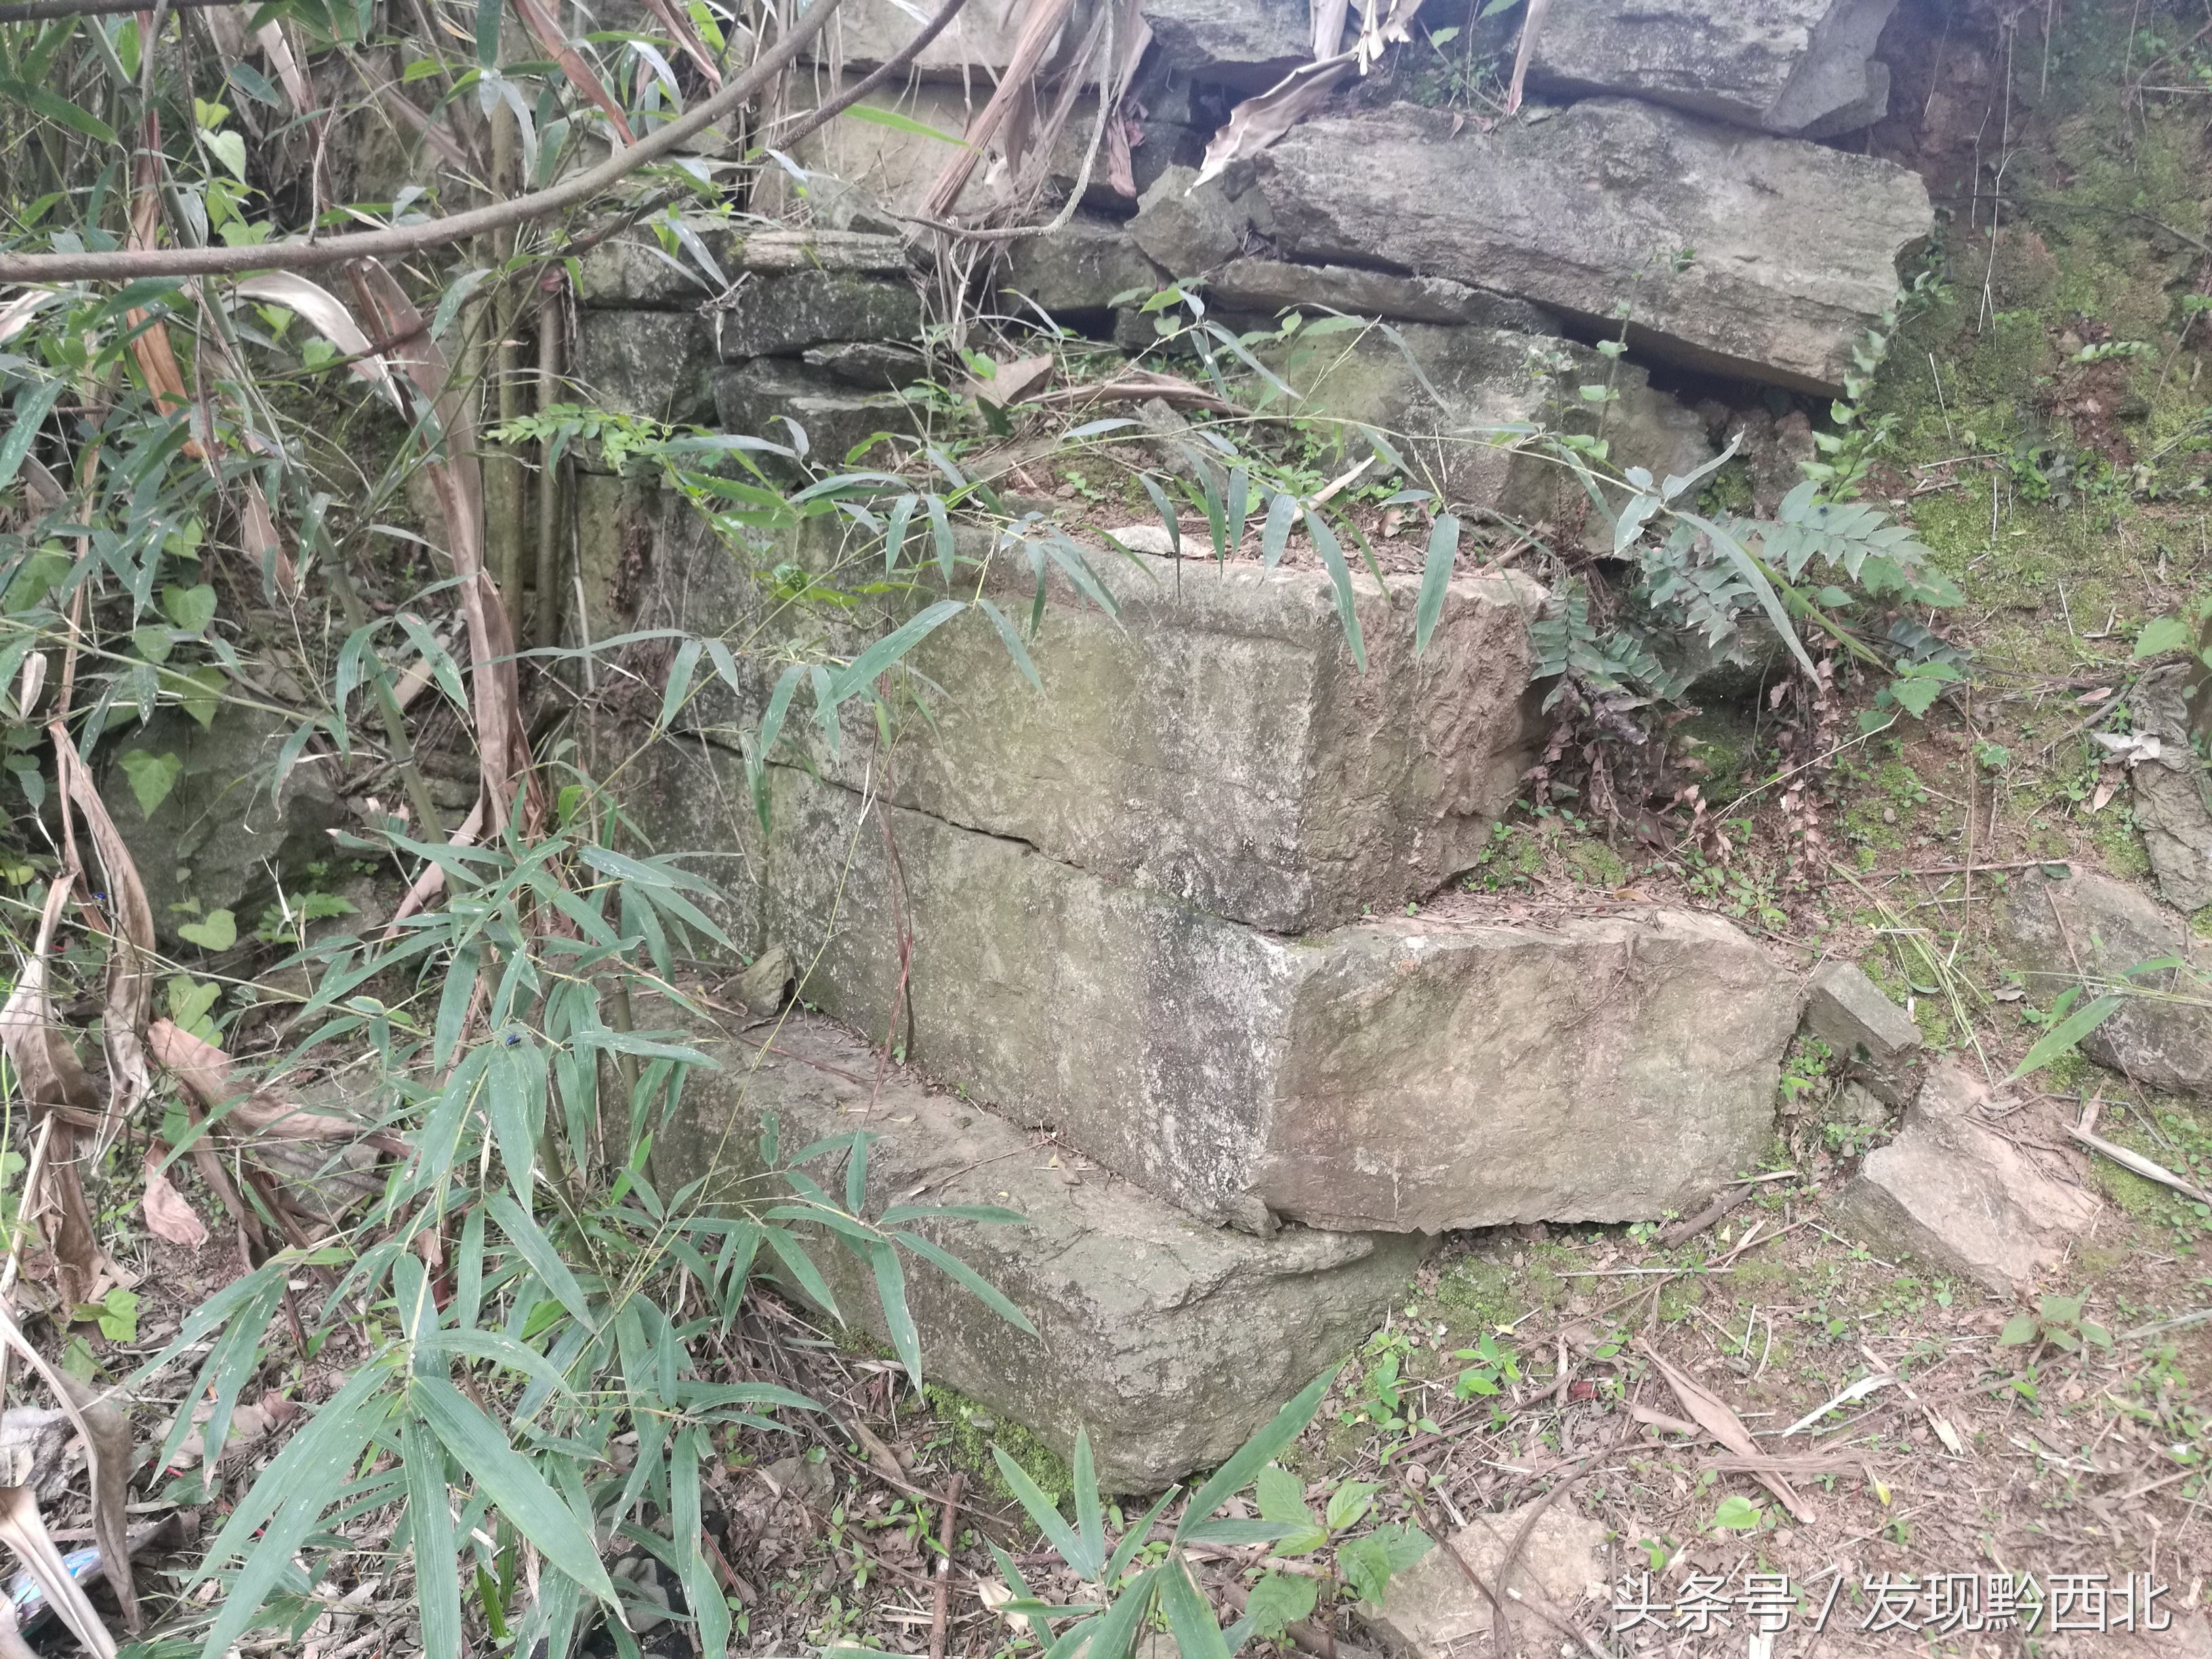 毕节织金安邦彦故居遗址,织金洞旁亟待保护和重建的历史文化古迹